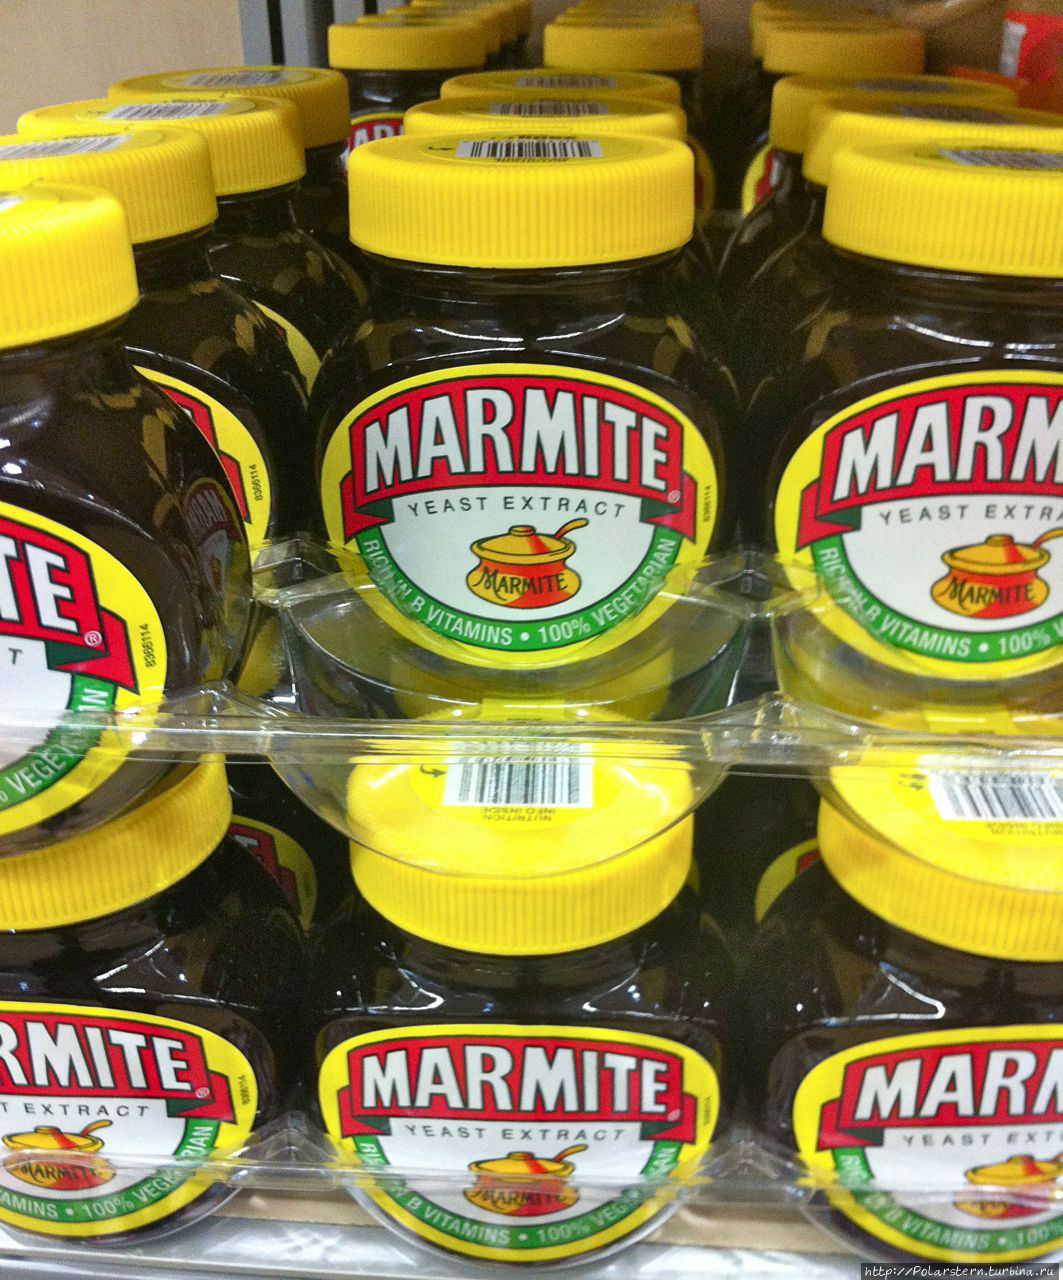 Marmite — название, которое знакомо любому англичанину с детства. Этот продукт настолько близок британцам, что сопровождает их и во время учебы в школе, и службы в армии. Это дрожжевой экстрат в виде пасты, которую обычно едят на завтрак в виде сендвичей. По цвету паста коричневого цвета, запах и вкус очень специфический и на любителя. Слоган компании-производителя как никогда правдив: 